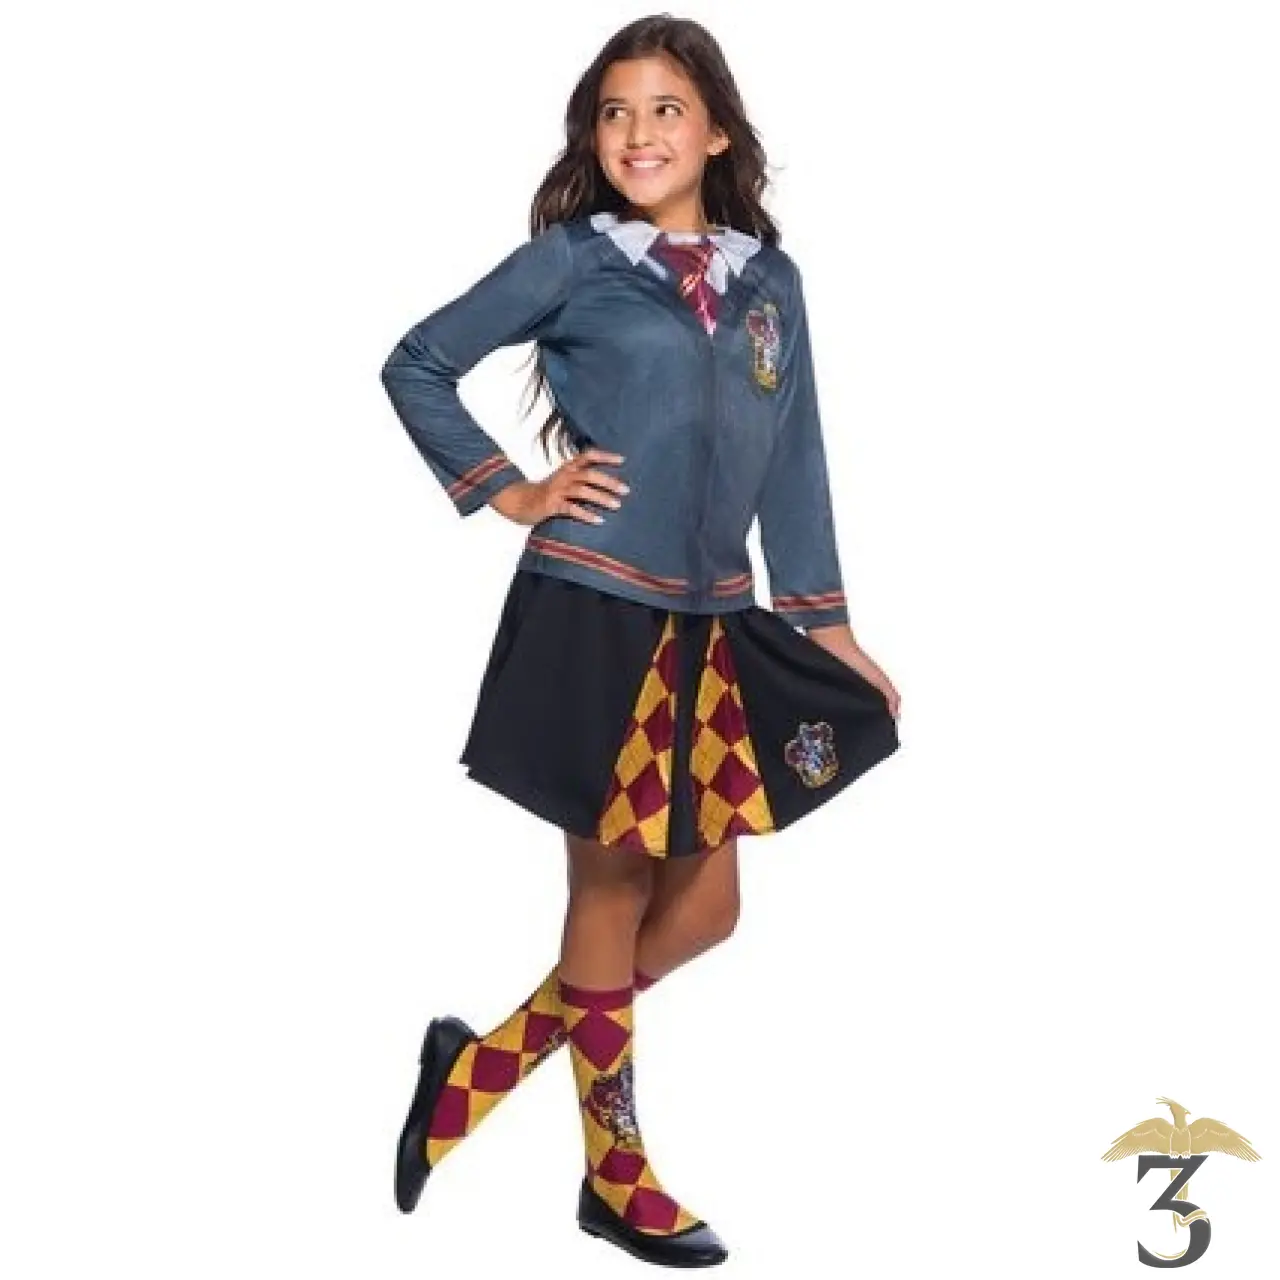 Costume de l'uniforme d'Hermione Granger dans Harry Potter version